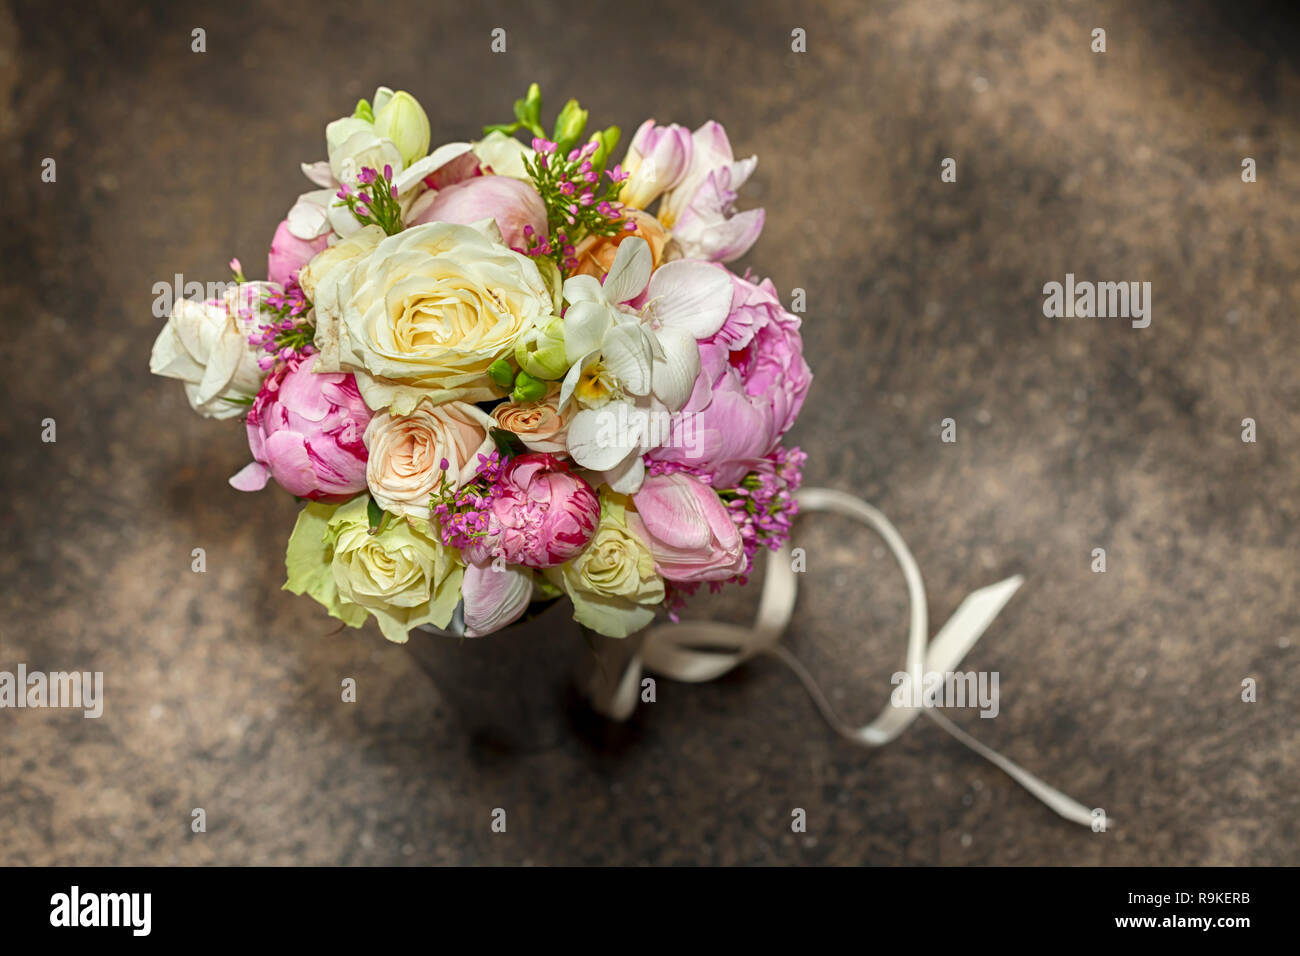 Bunter Blumenstrauß mit bunten Rosen. Nahaufnahme von Blumenschmuck, Ansicht von oben. Stockfoto